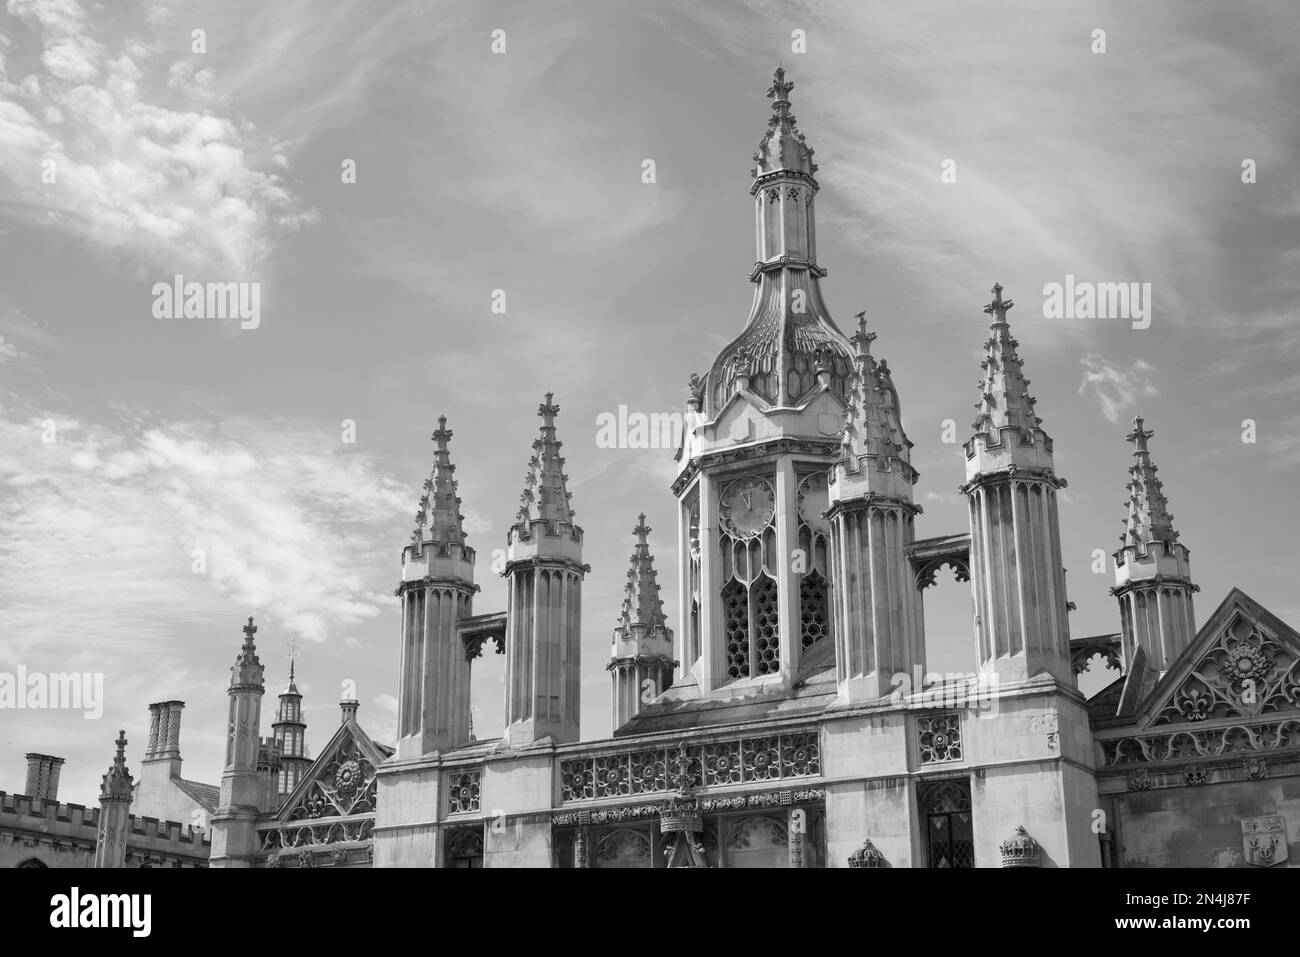 Cambridge A Street Fotografen träumen davon, die Bewohner und die Architektur einzufangen – ein absolutes muss in Großbritannien Stockfoto